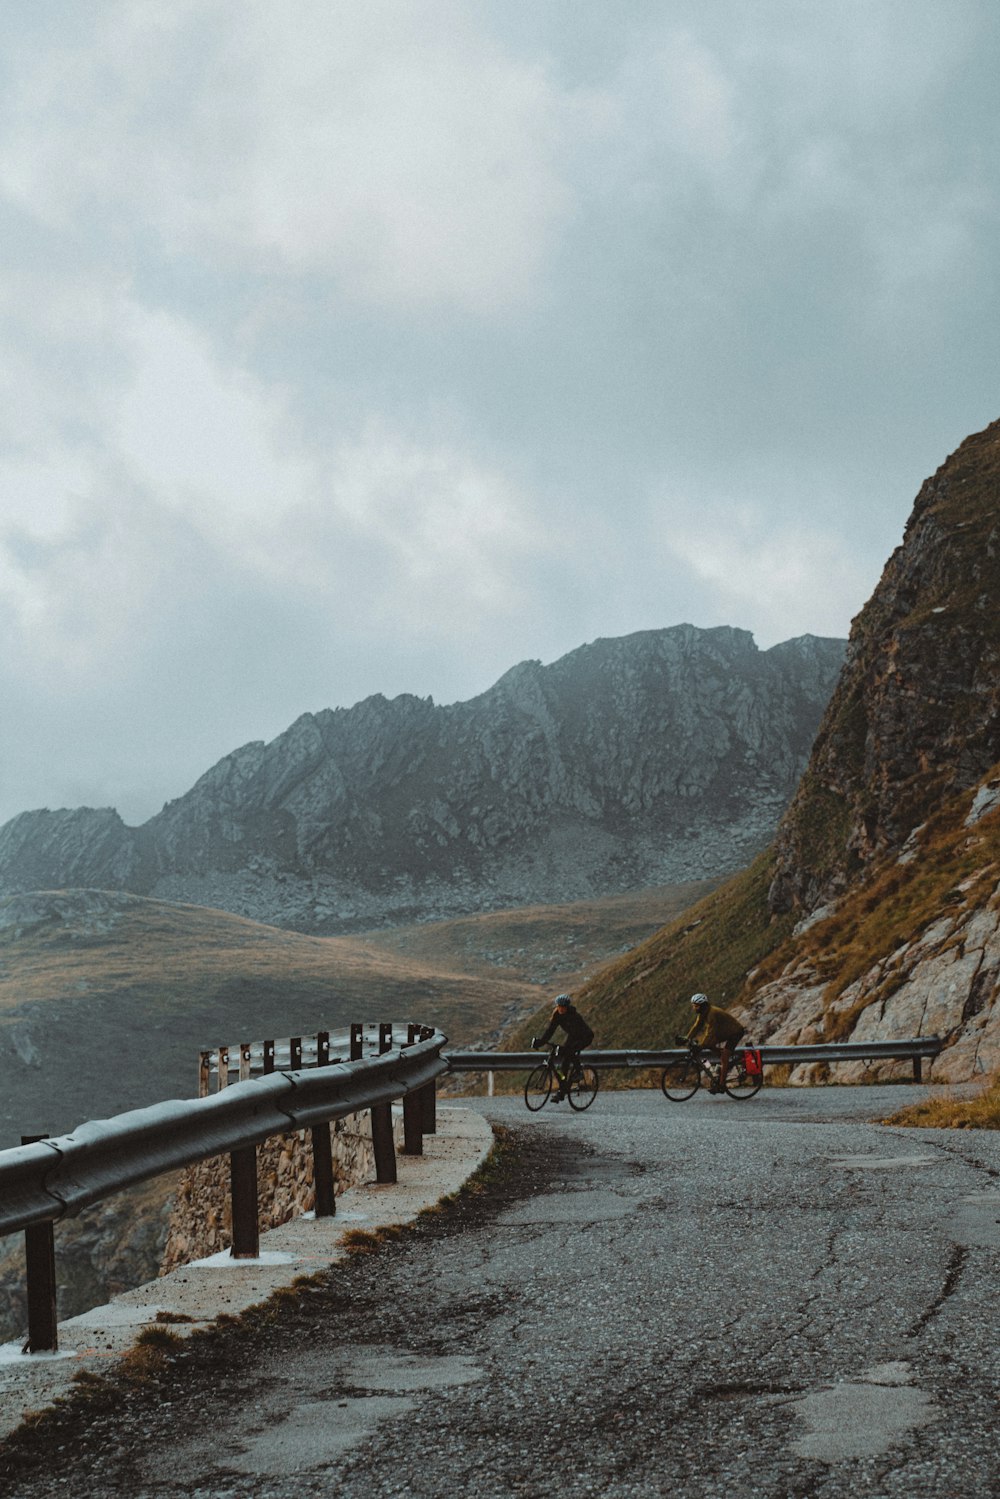 a man riding a bike down a road next to a mountain